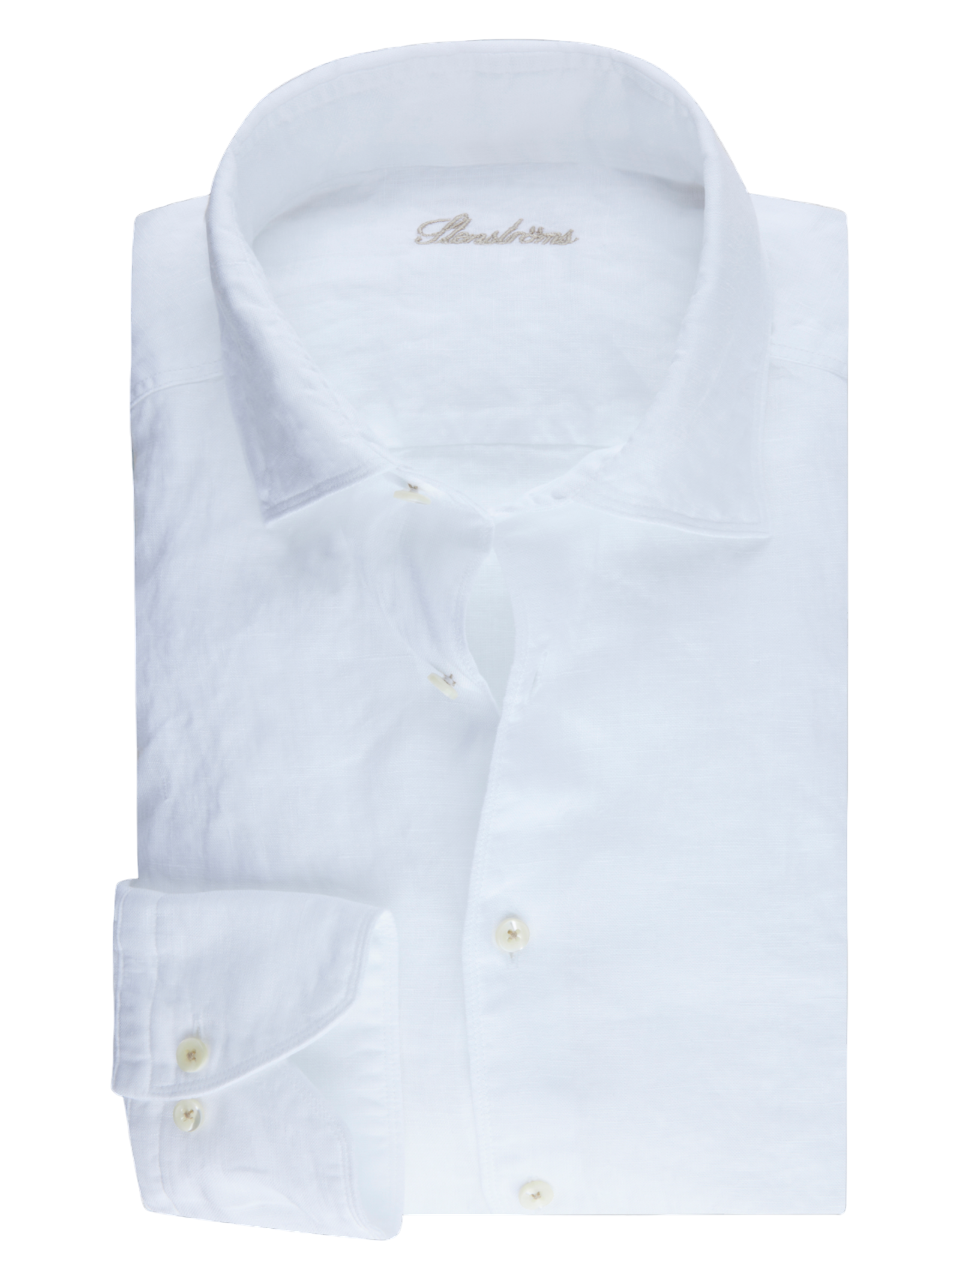 Stenstroms Linen Shirt in White